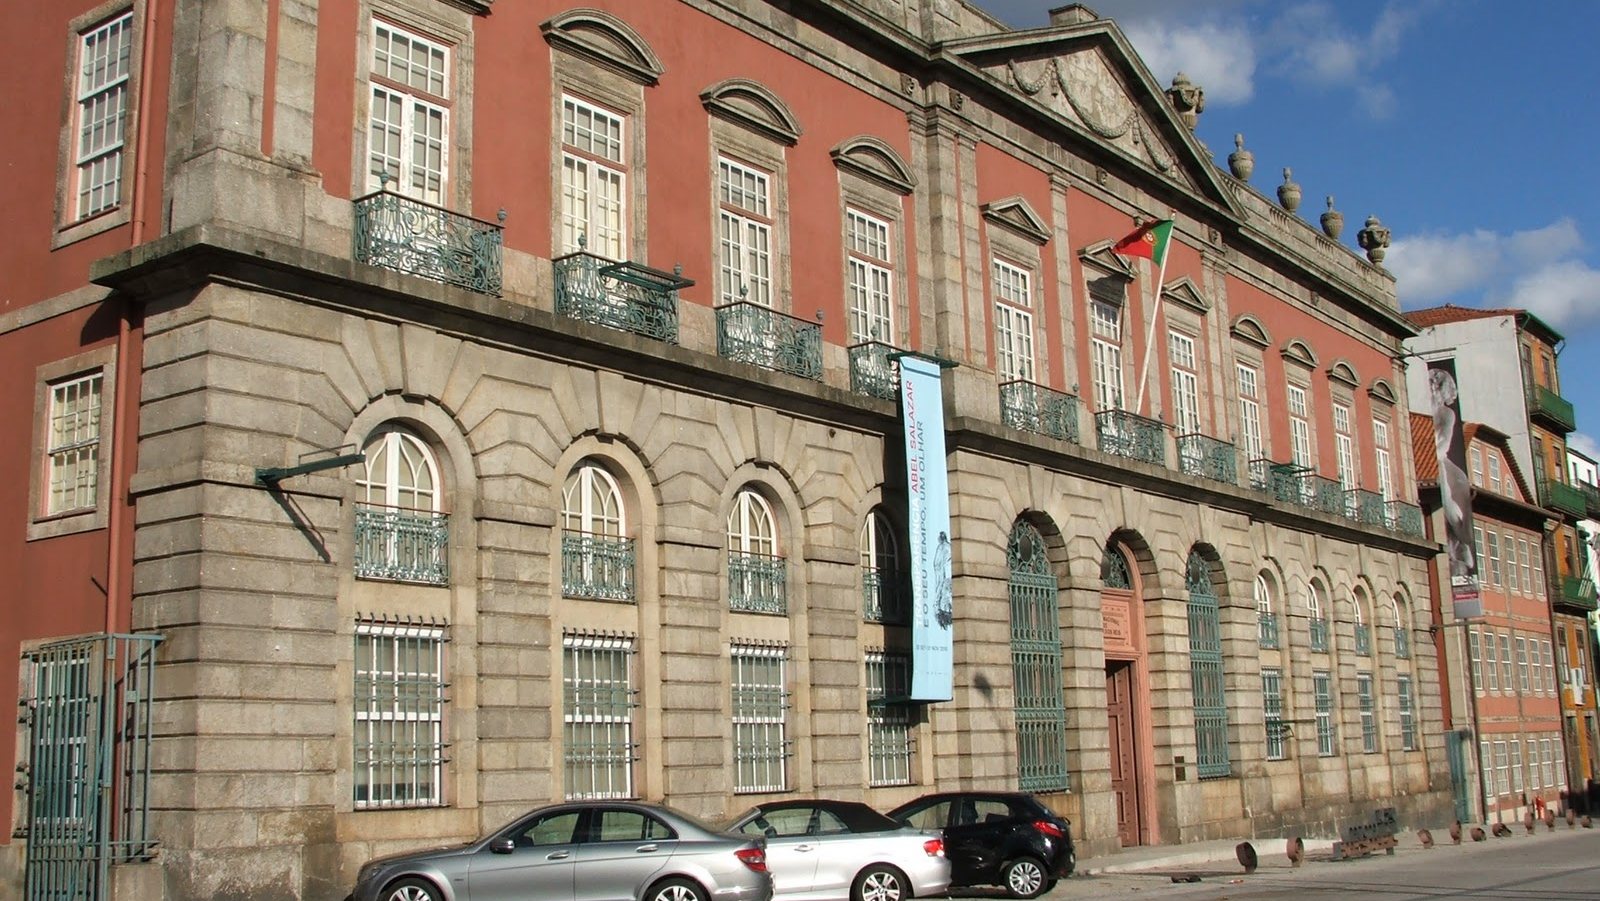 O Museu Nacional Soares dos Reis está instalado no Palácio dos Carrancas, no Porto, e foi inaugurado em 1833, quando o rei Pedro IV decidiu estabelecer na cidade um museu de pinturas e estampa